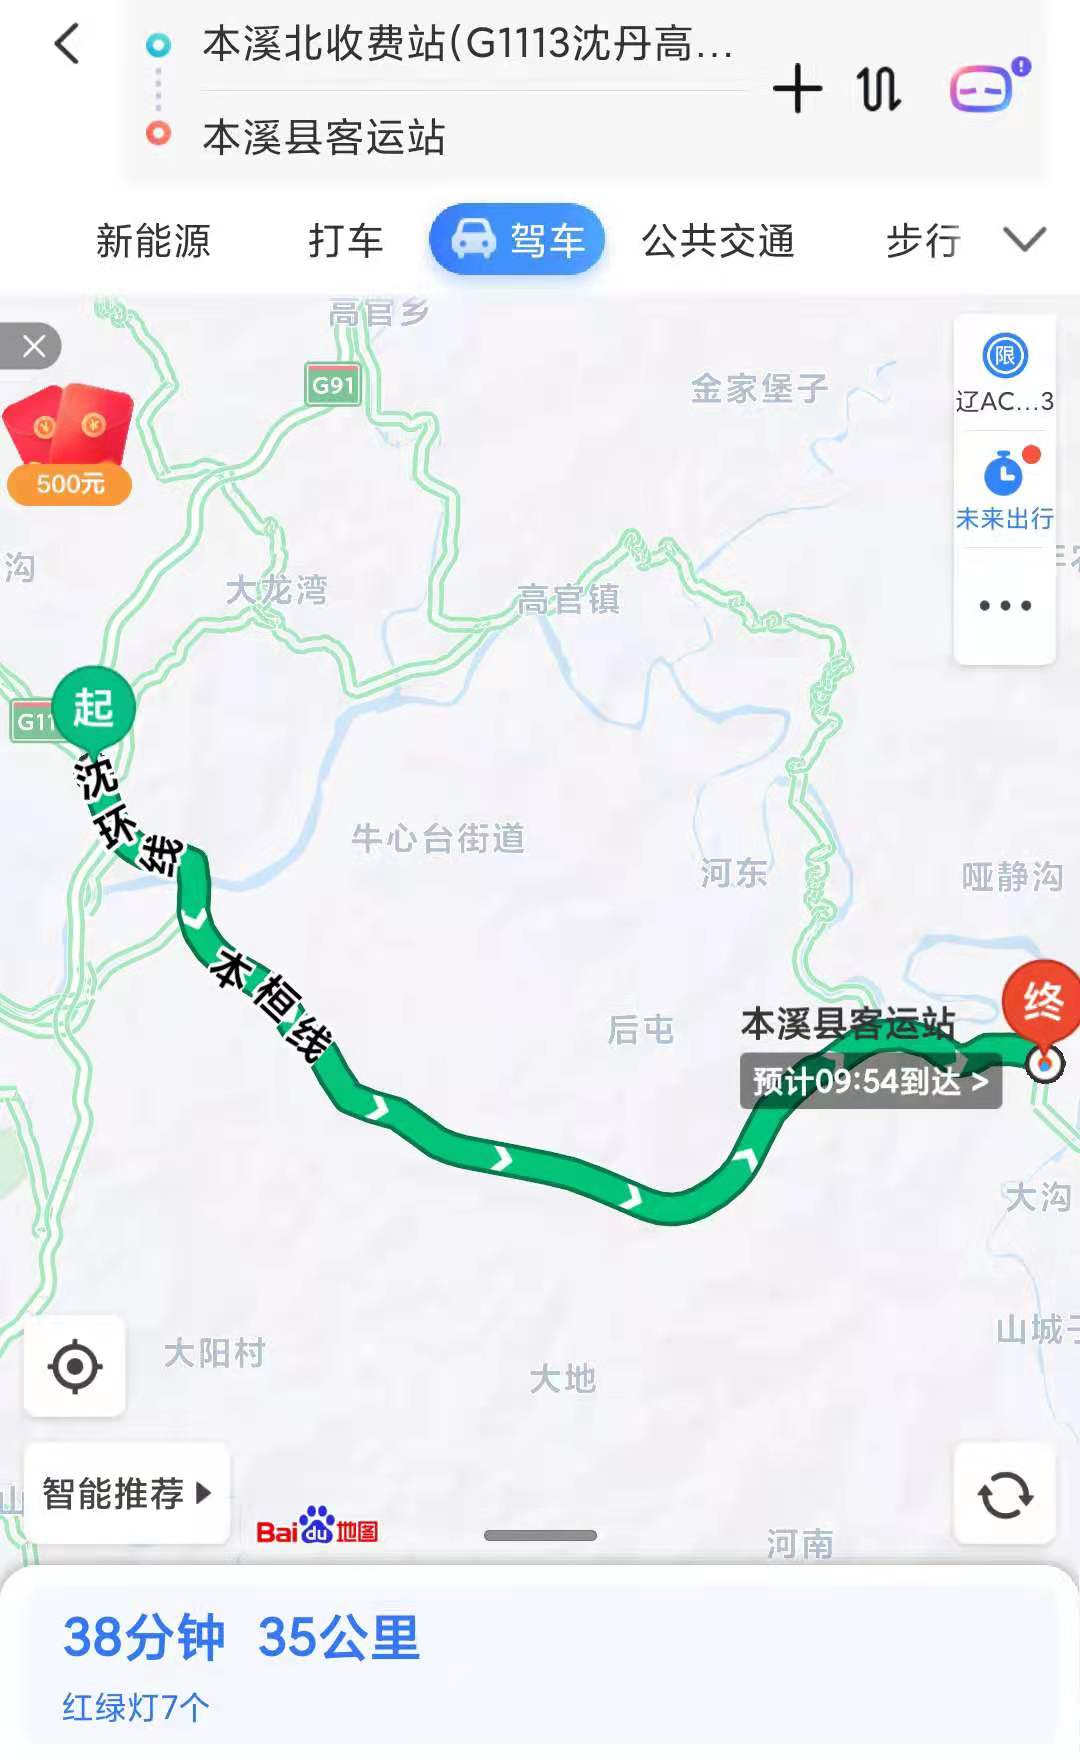 辽宁省高速公路的现状介绍与未来发展建议